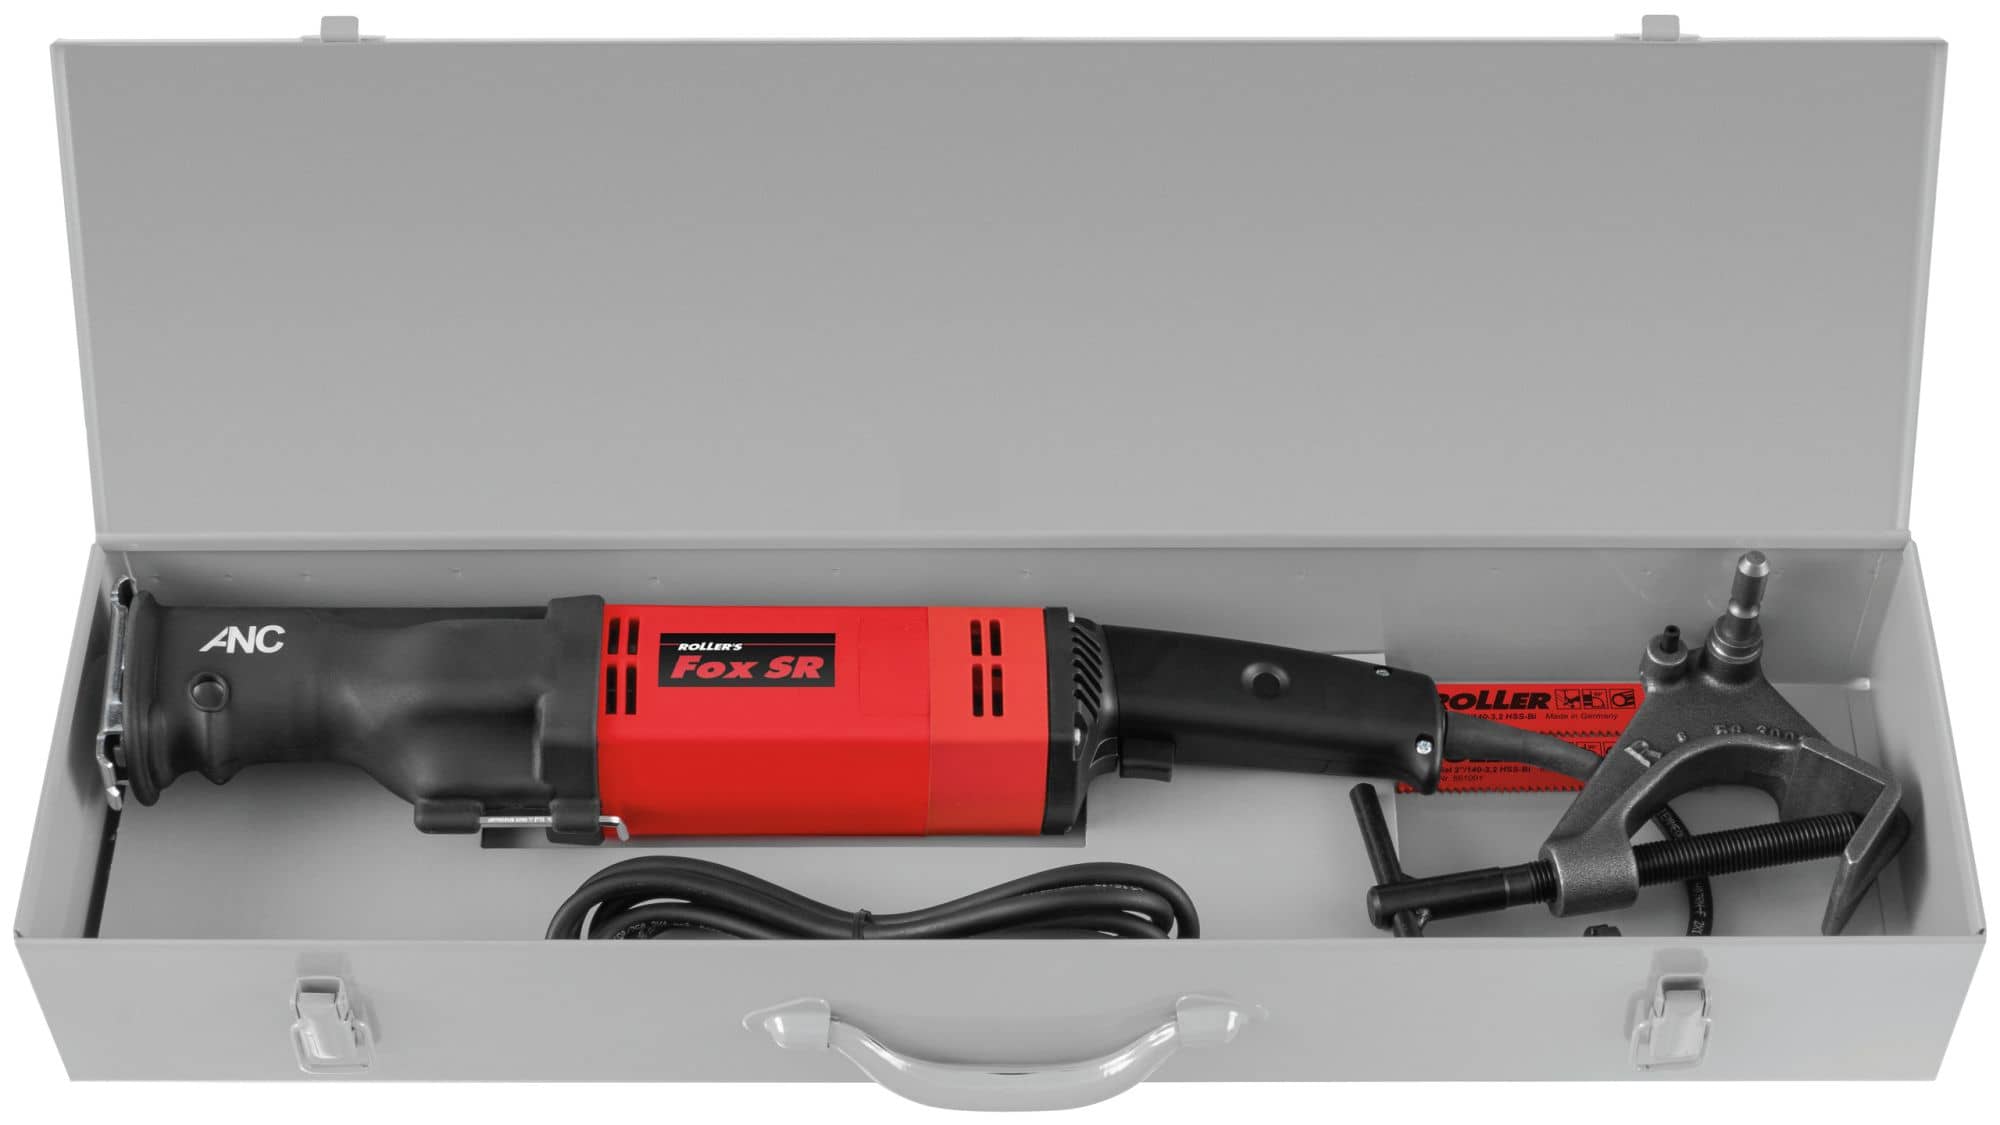 ROLLER'S Fox SR Set - Elektro-Rohrsäge mit ANC, für Rohre bis Ø 6 Zoll, 160 mm